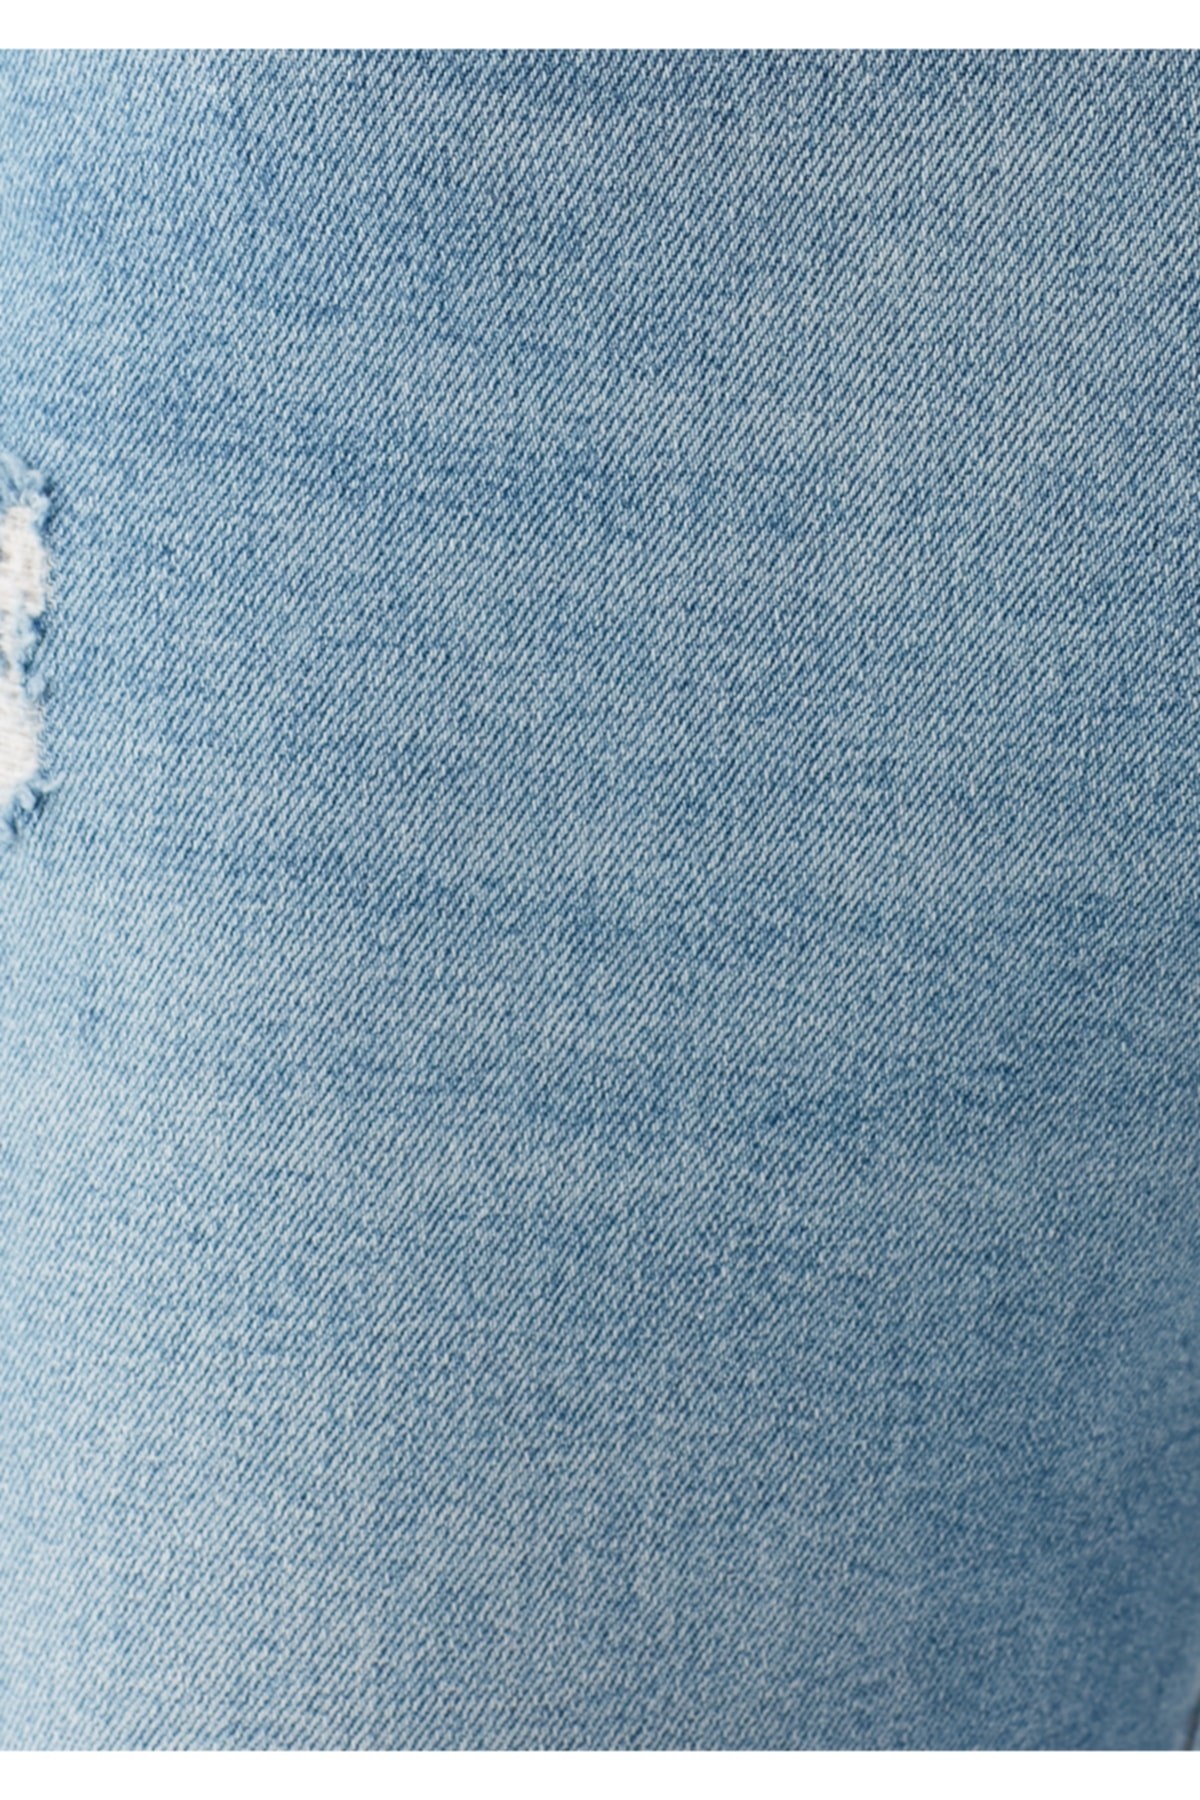 Mavi Jeans Kadın Pantolon 100277-29181 